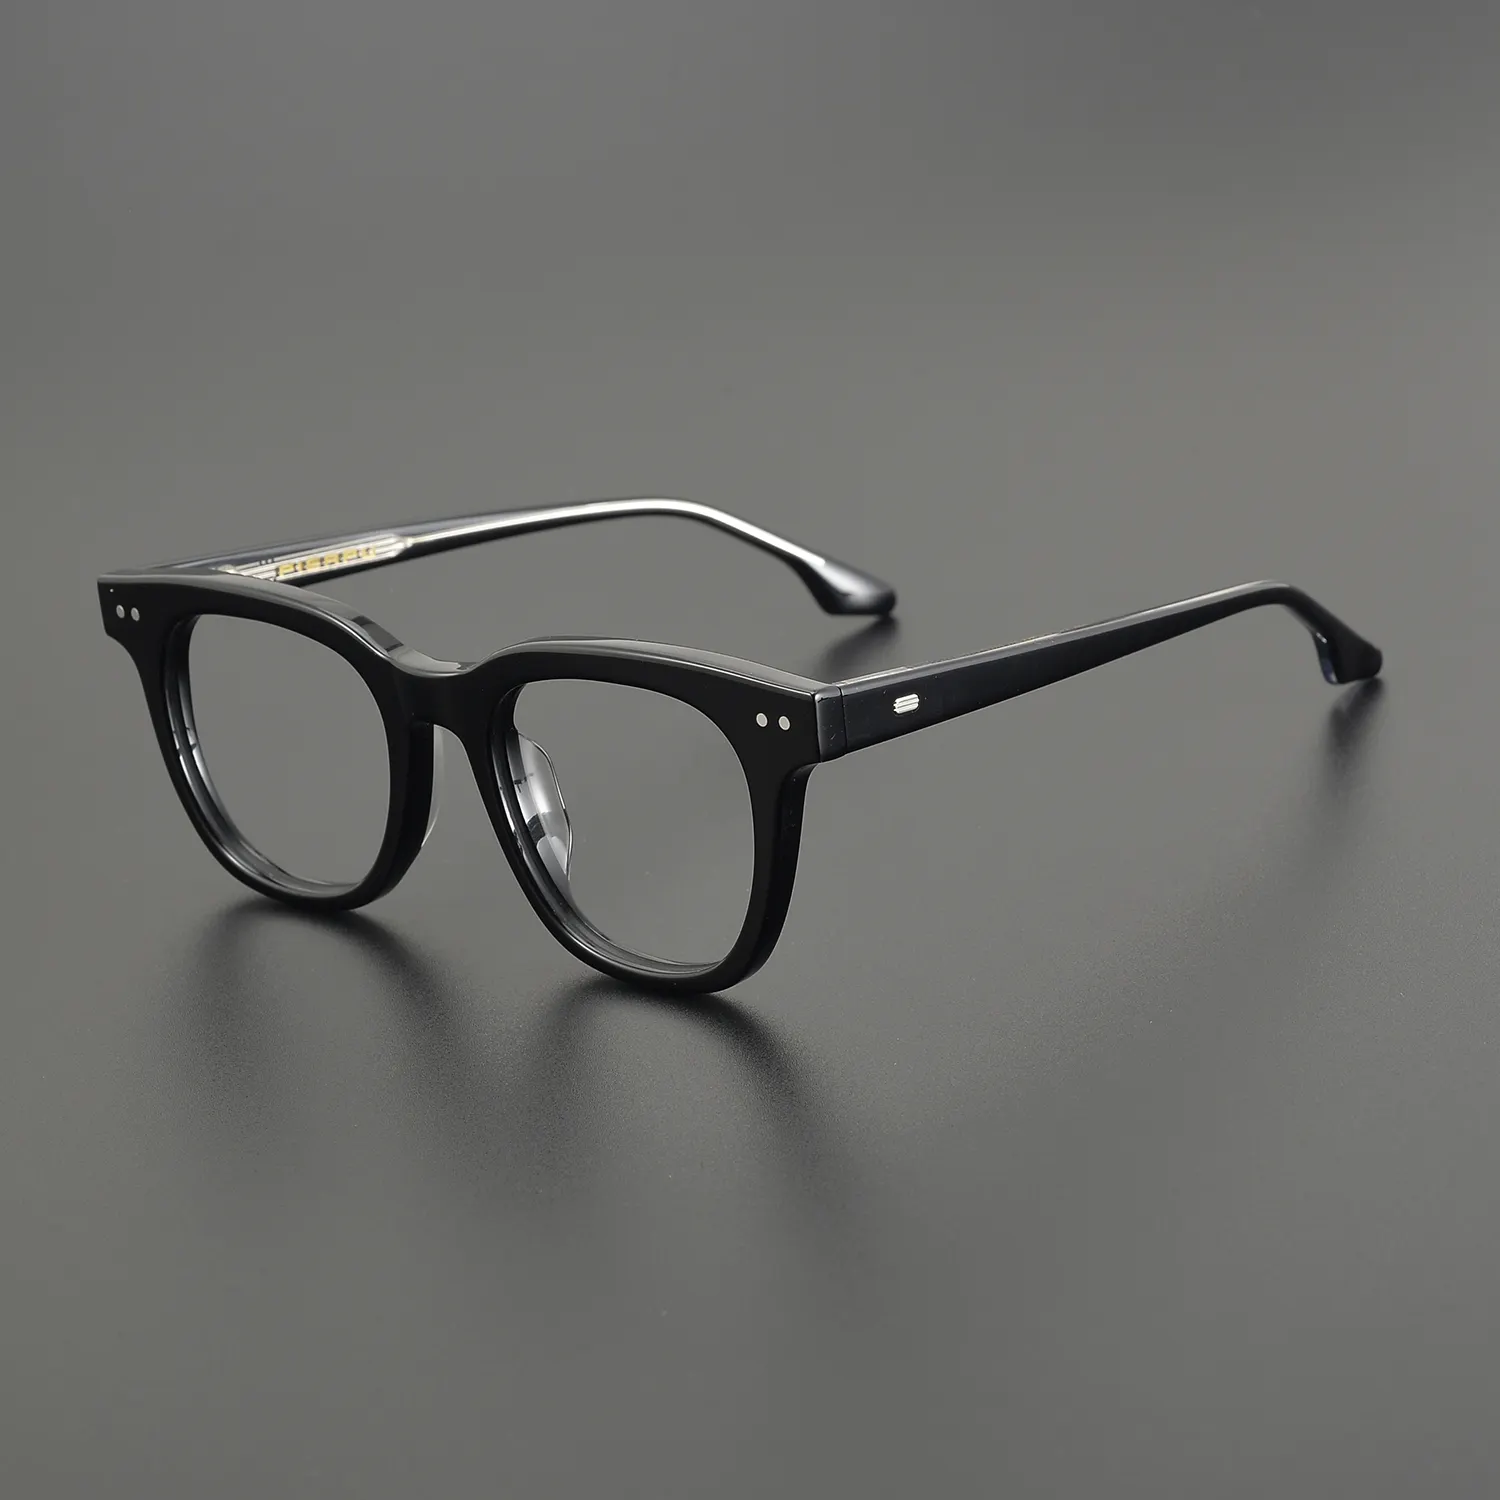 Moda hecha a mano gruesa acetato gafas marcos diseño rectángulo anteojos ópticos gafas graduadas marco